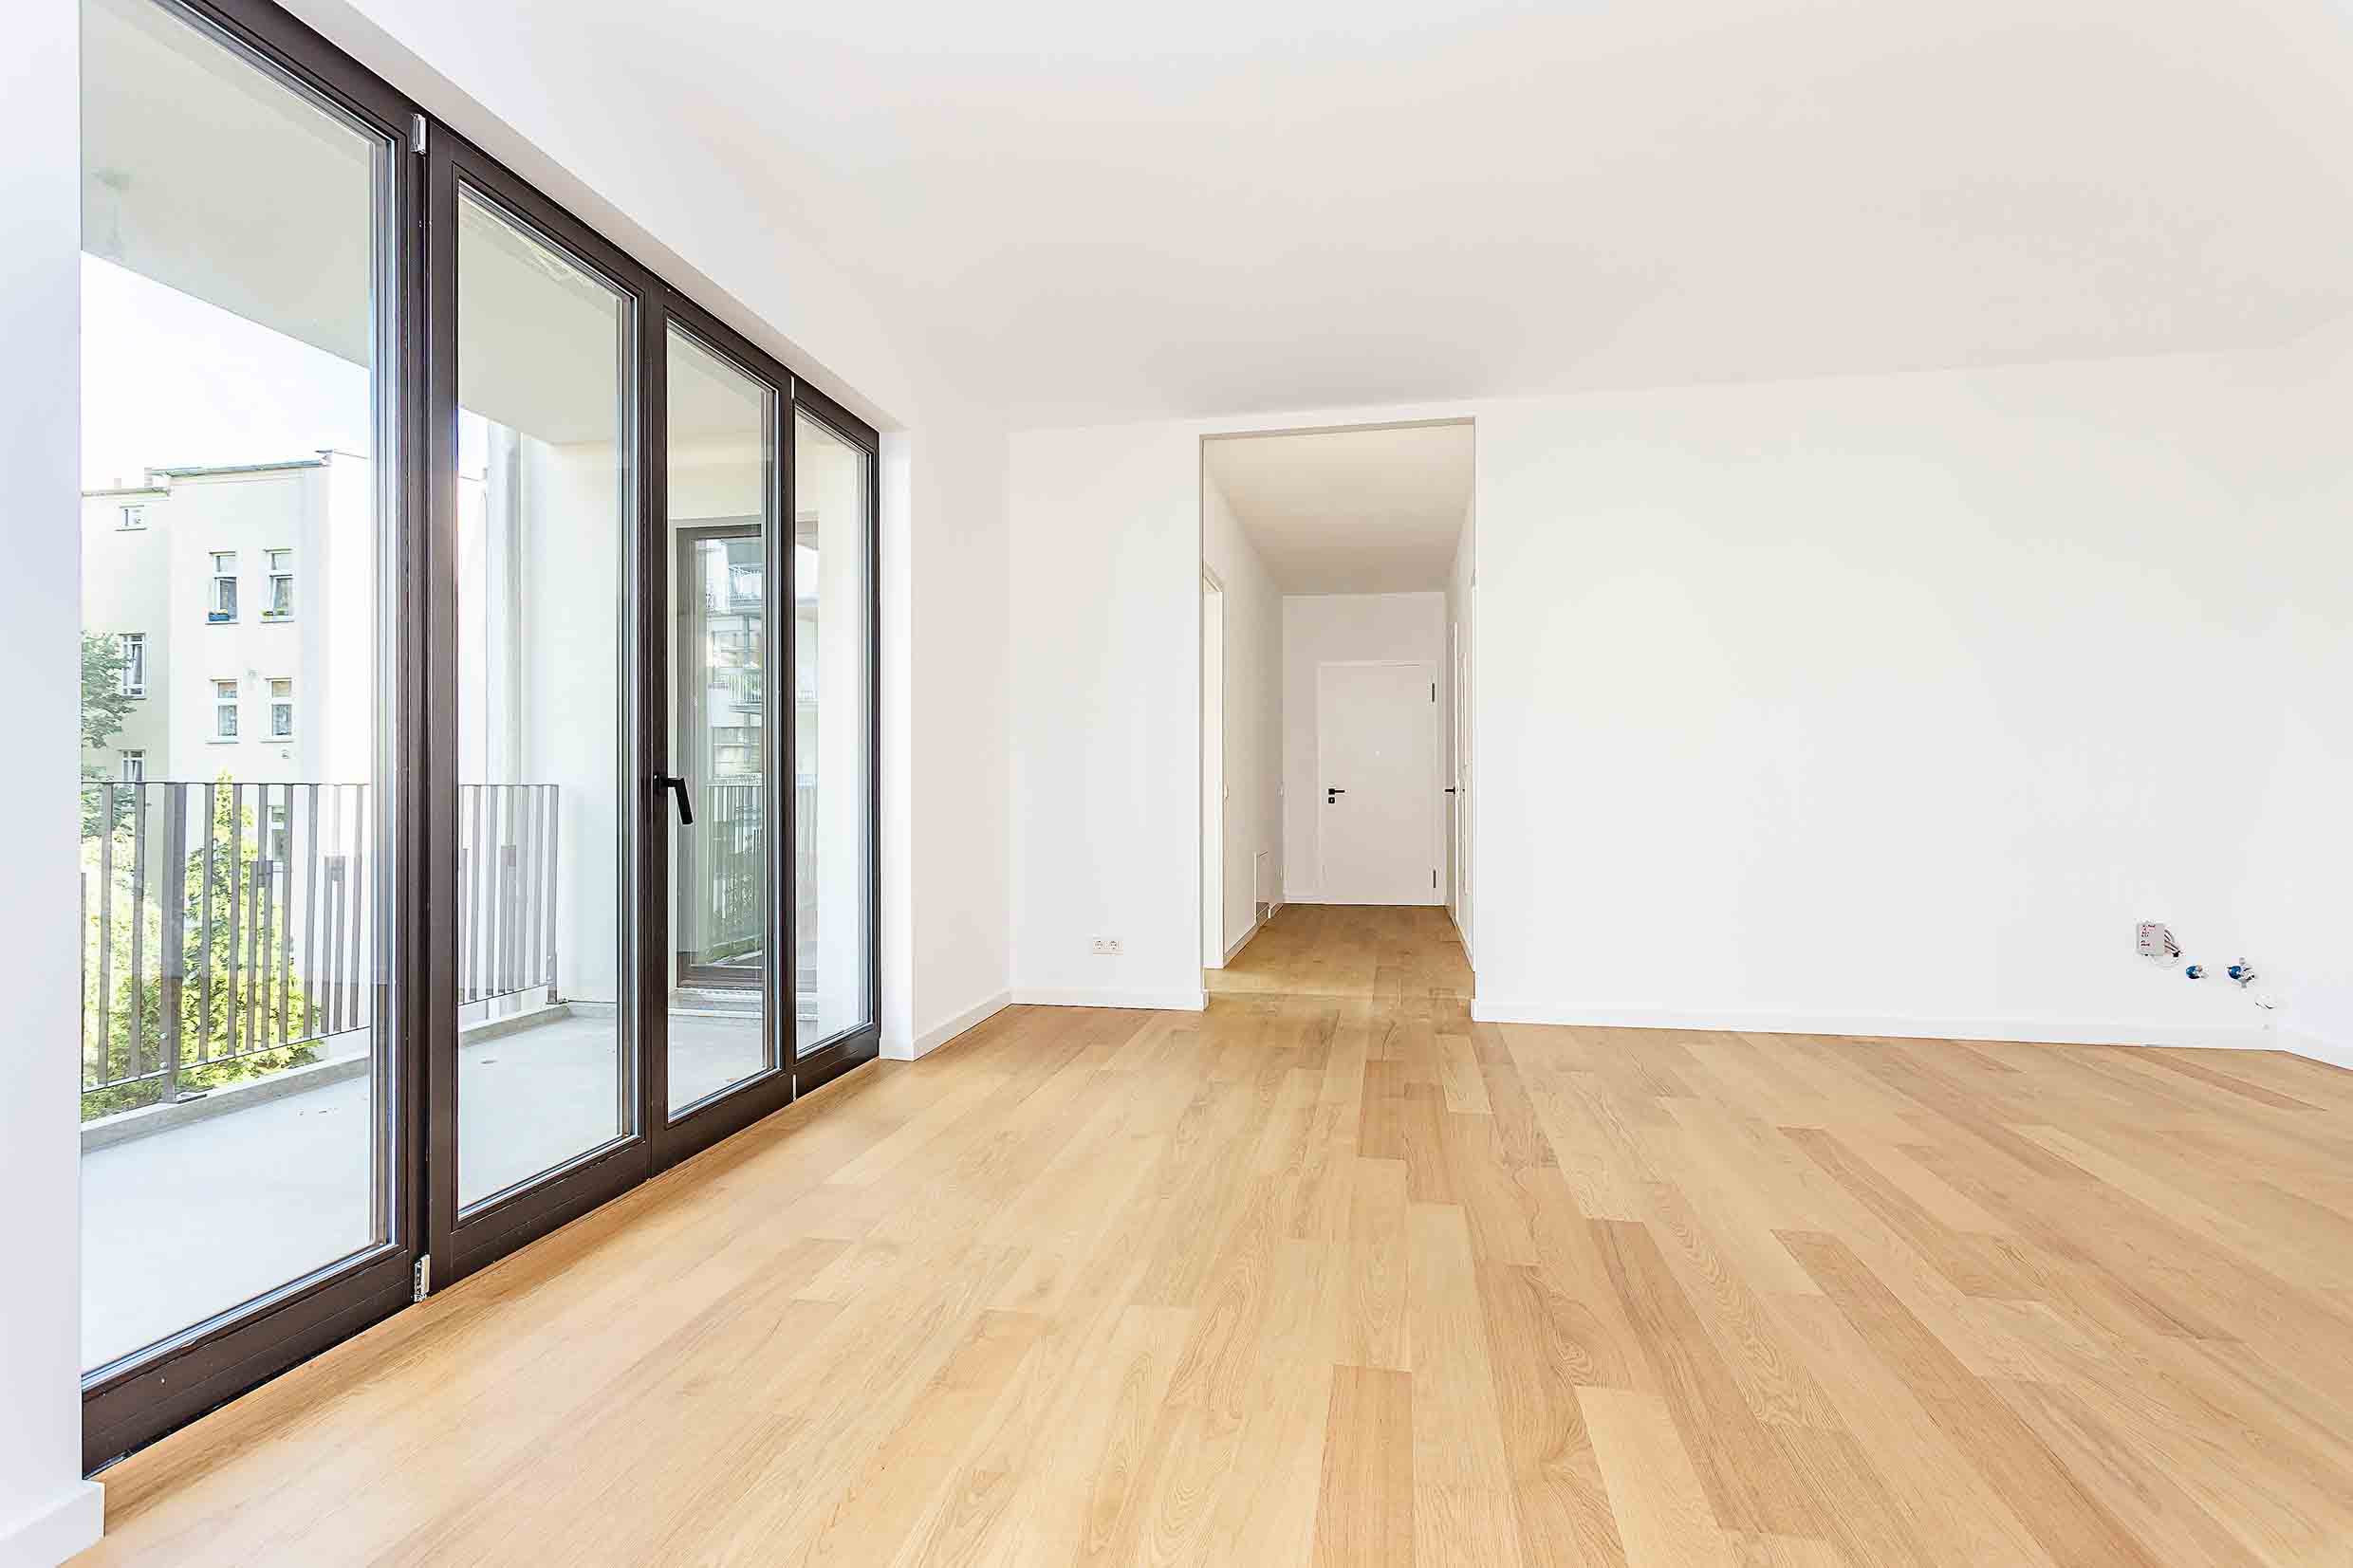 Neubau Wohnung in Berlin Friedrichshain als Anlage Investment oder zum Eigennutz